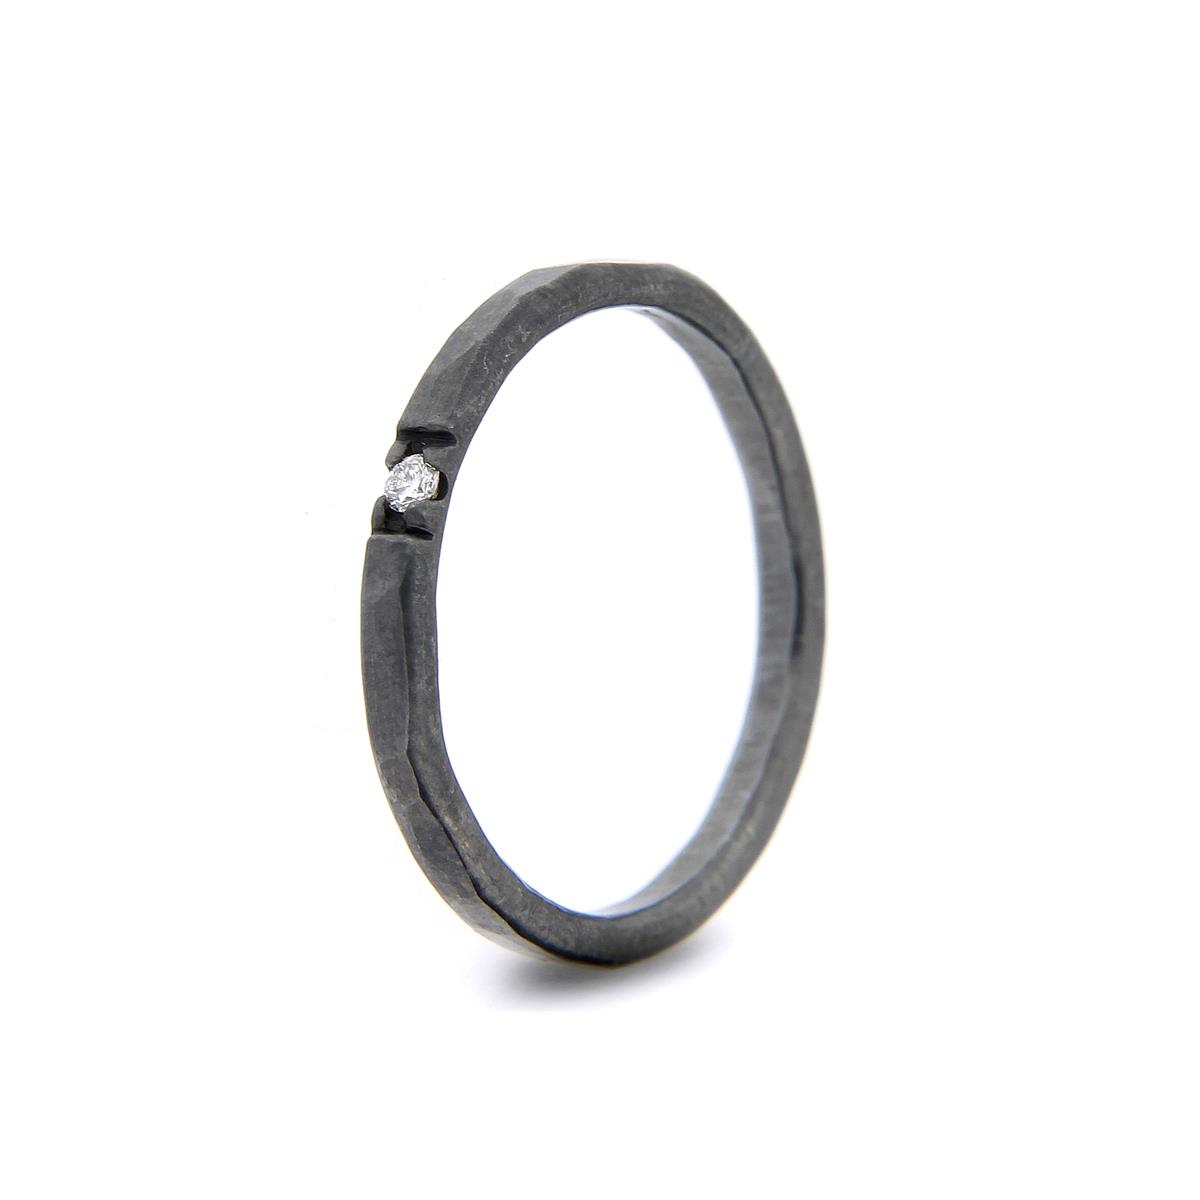 Katie g. Jewellery - Hammered Ring 2,0mm - sterling silber oxidiert + 1 brillant - Ring um 80€ und pro Brillant 90€ - mehrere Brillanten auch möglich